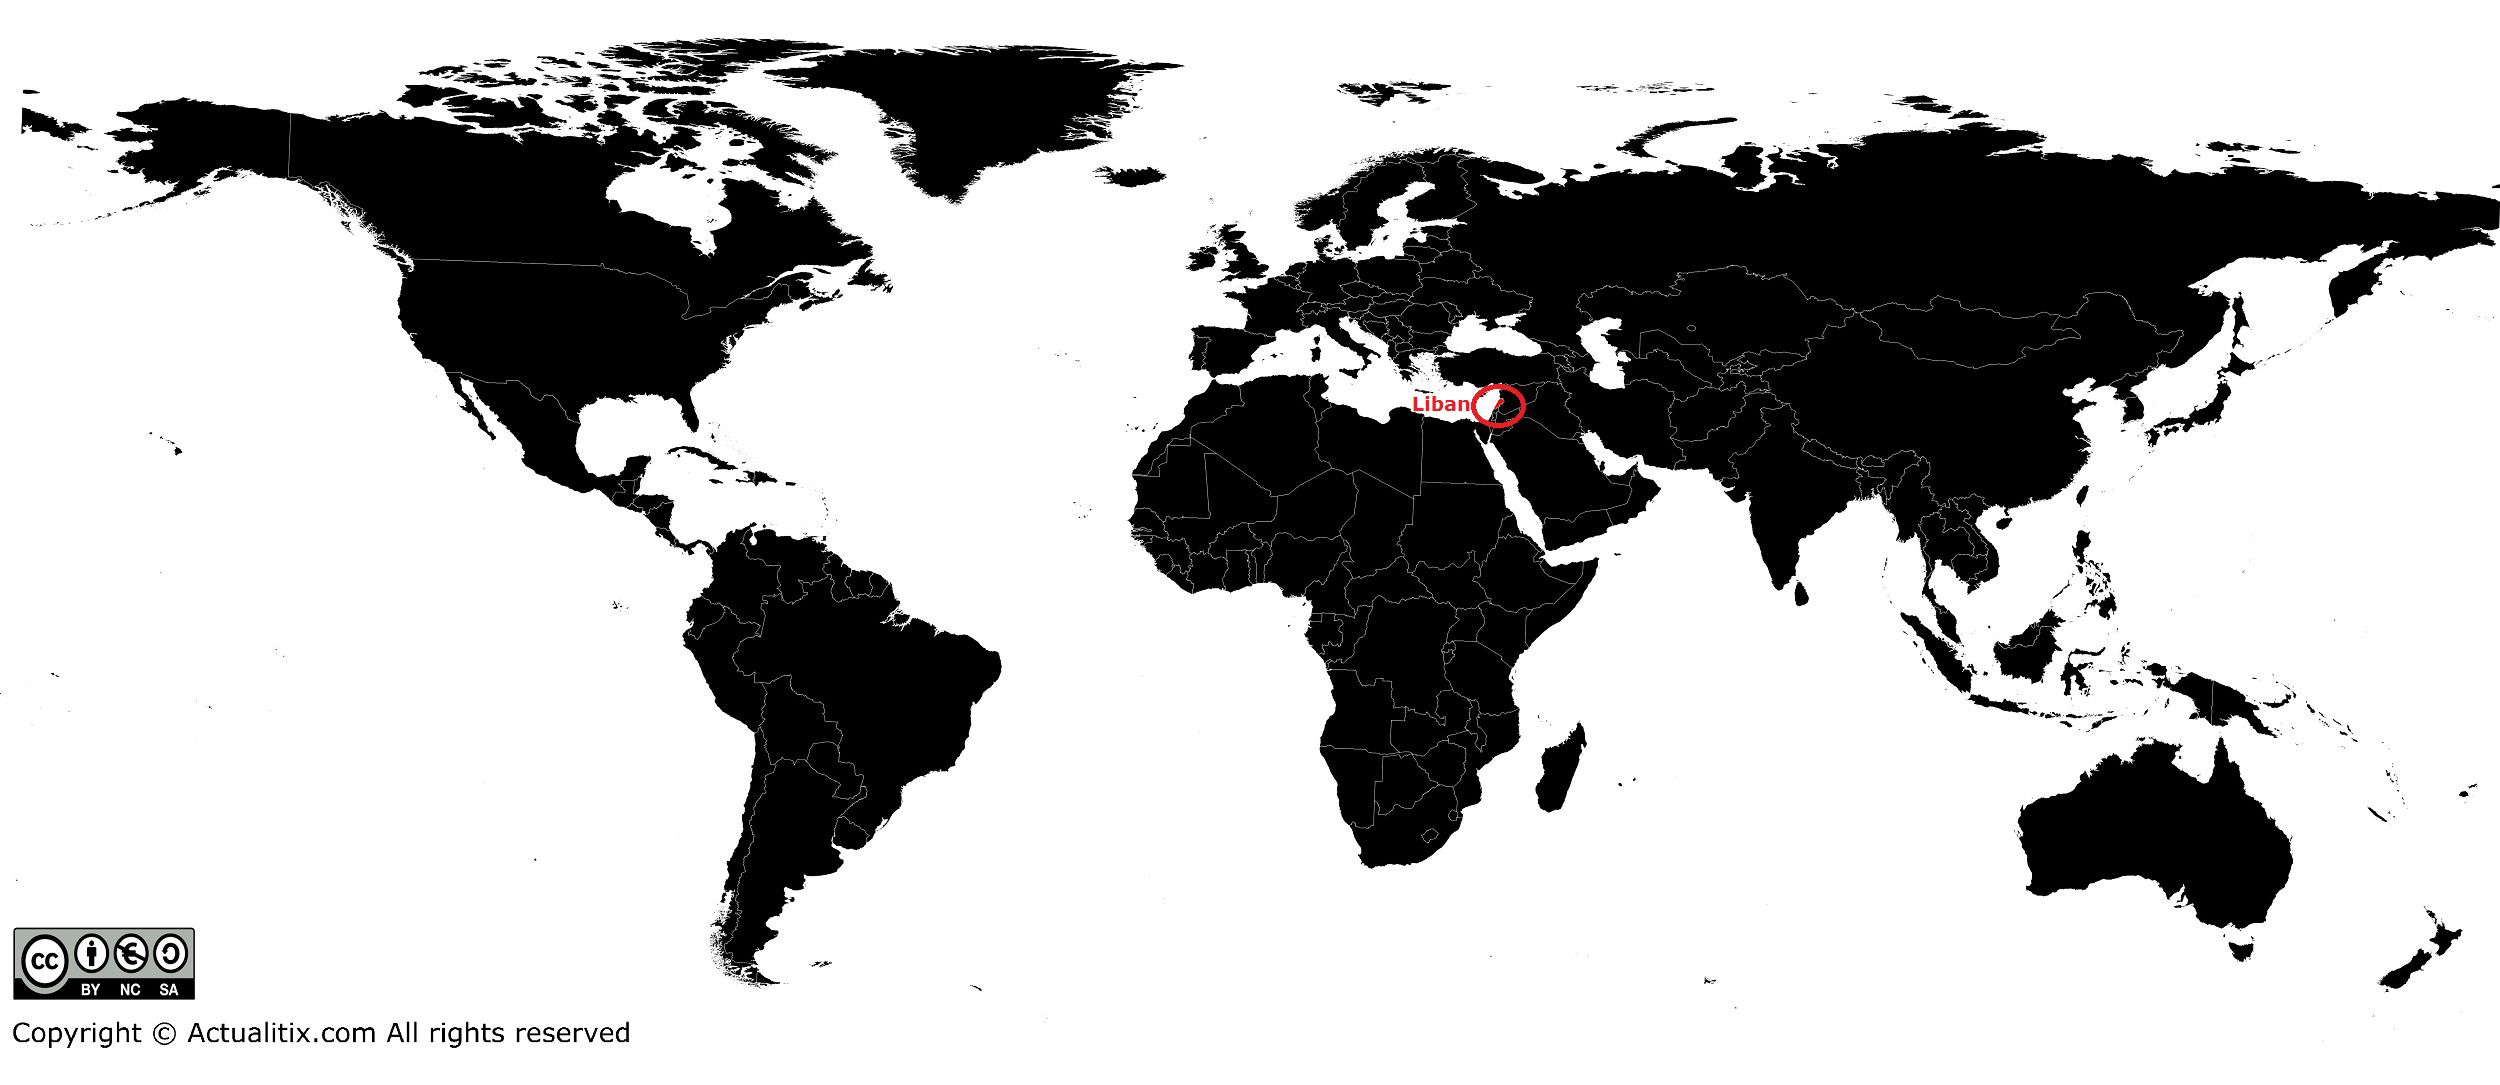 Liban sur la carte du monde